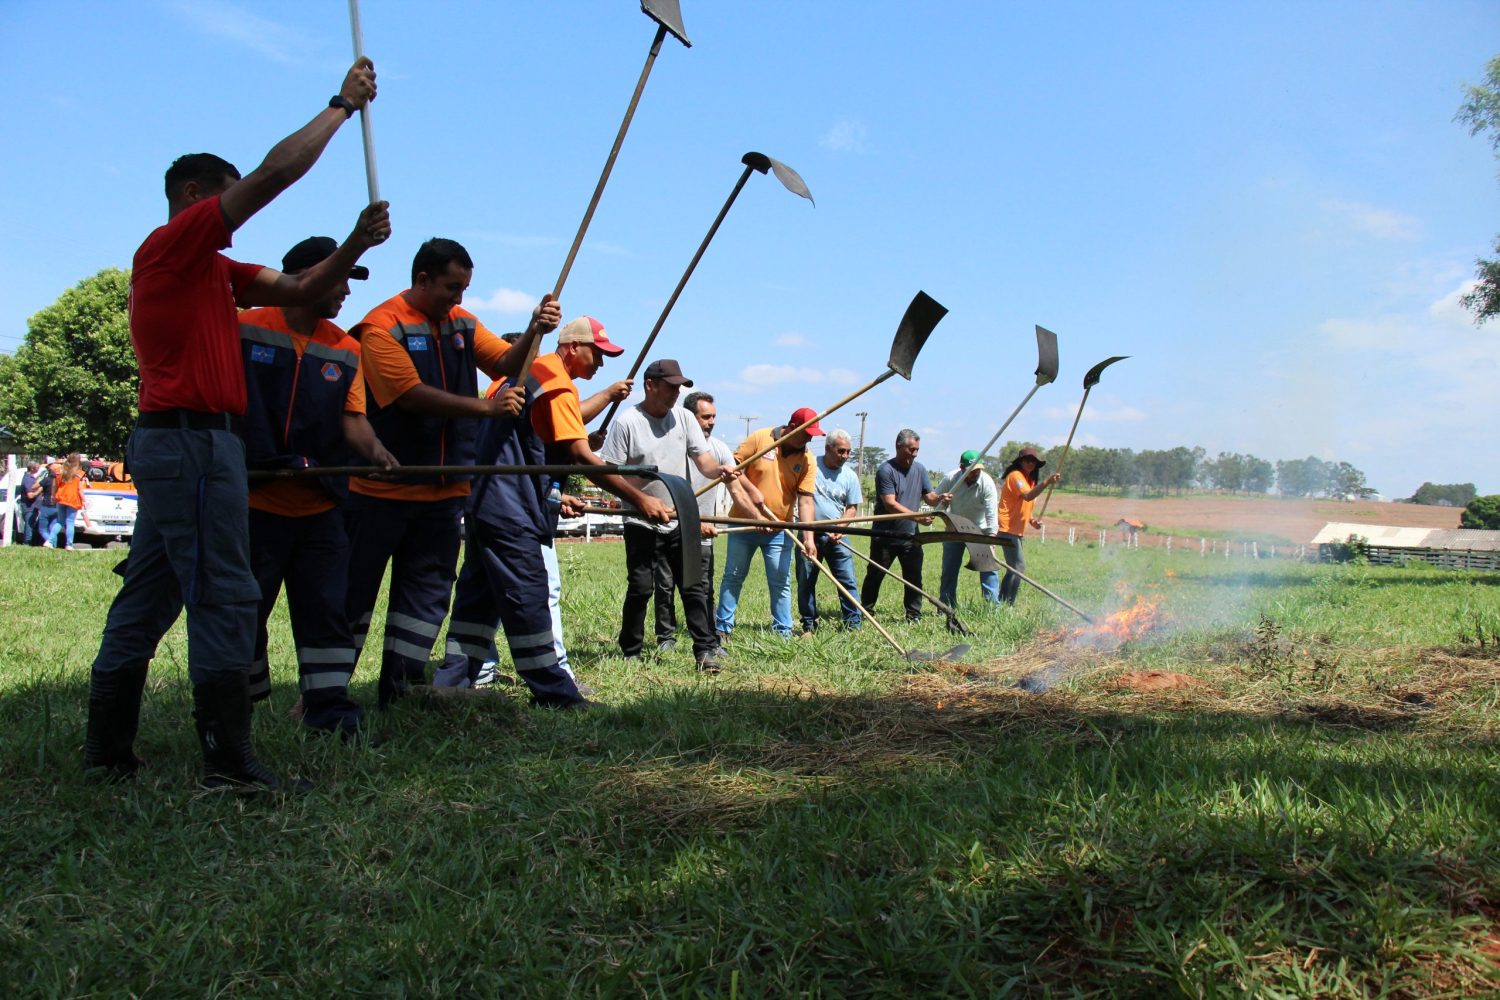 Produtores rurais foram convidados a participar dos treinamentos de combate a incêndios da Defesa Civil de SP